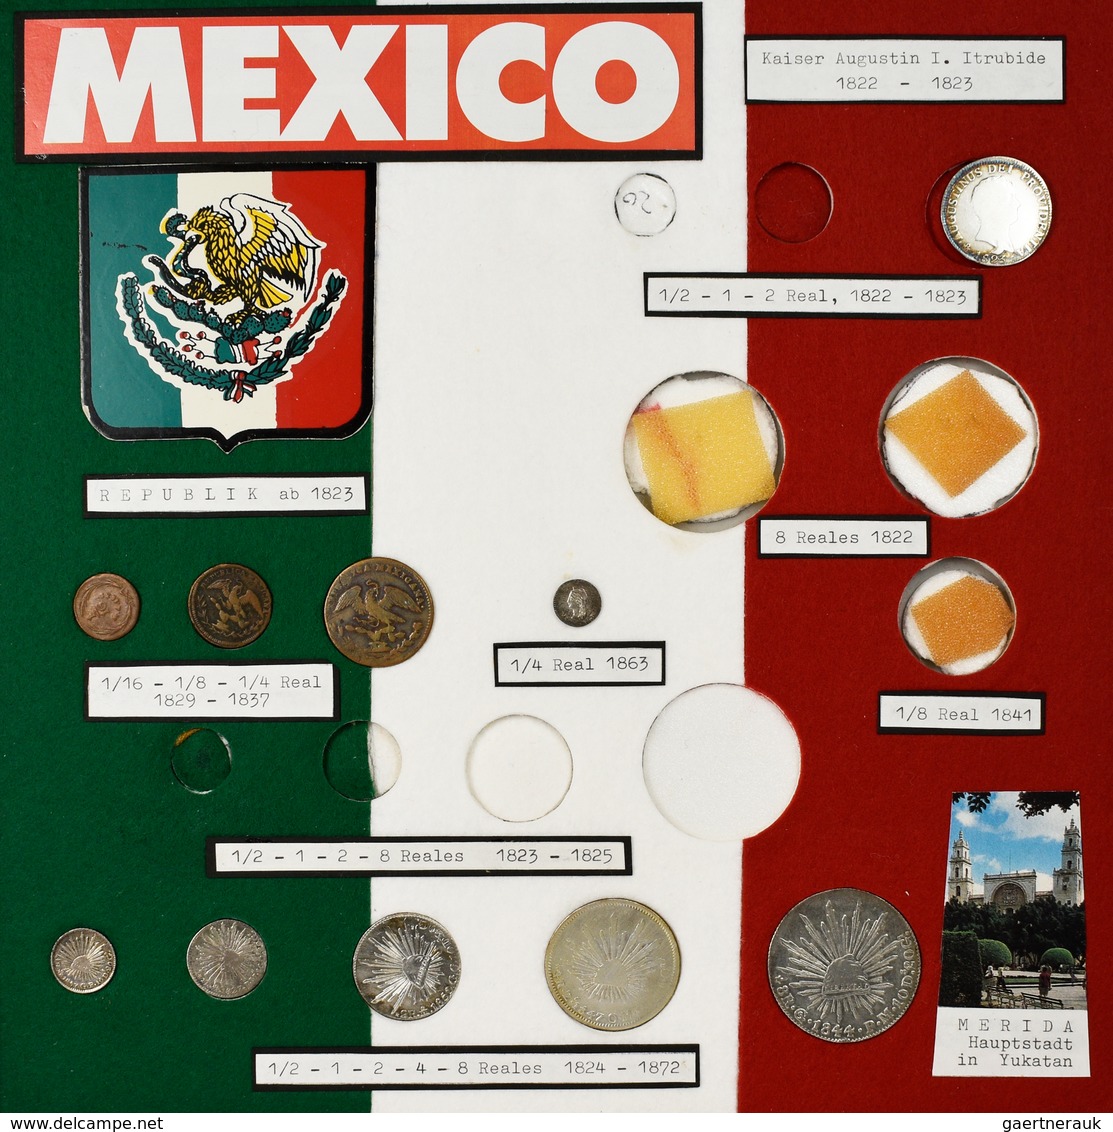 Mexiko: Eine umfangreiche Typensammlung Mexikanischer Münzen ab ca. 1823. 12 BEBA Schuber mit Münzen